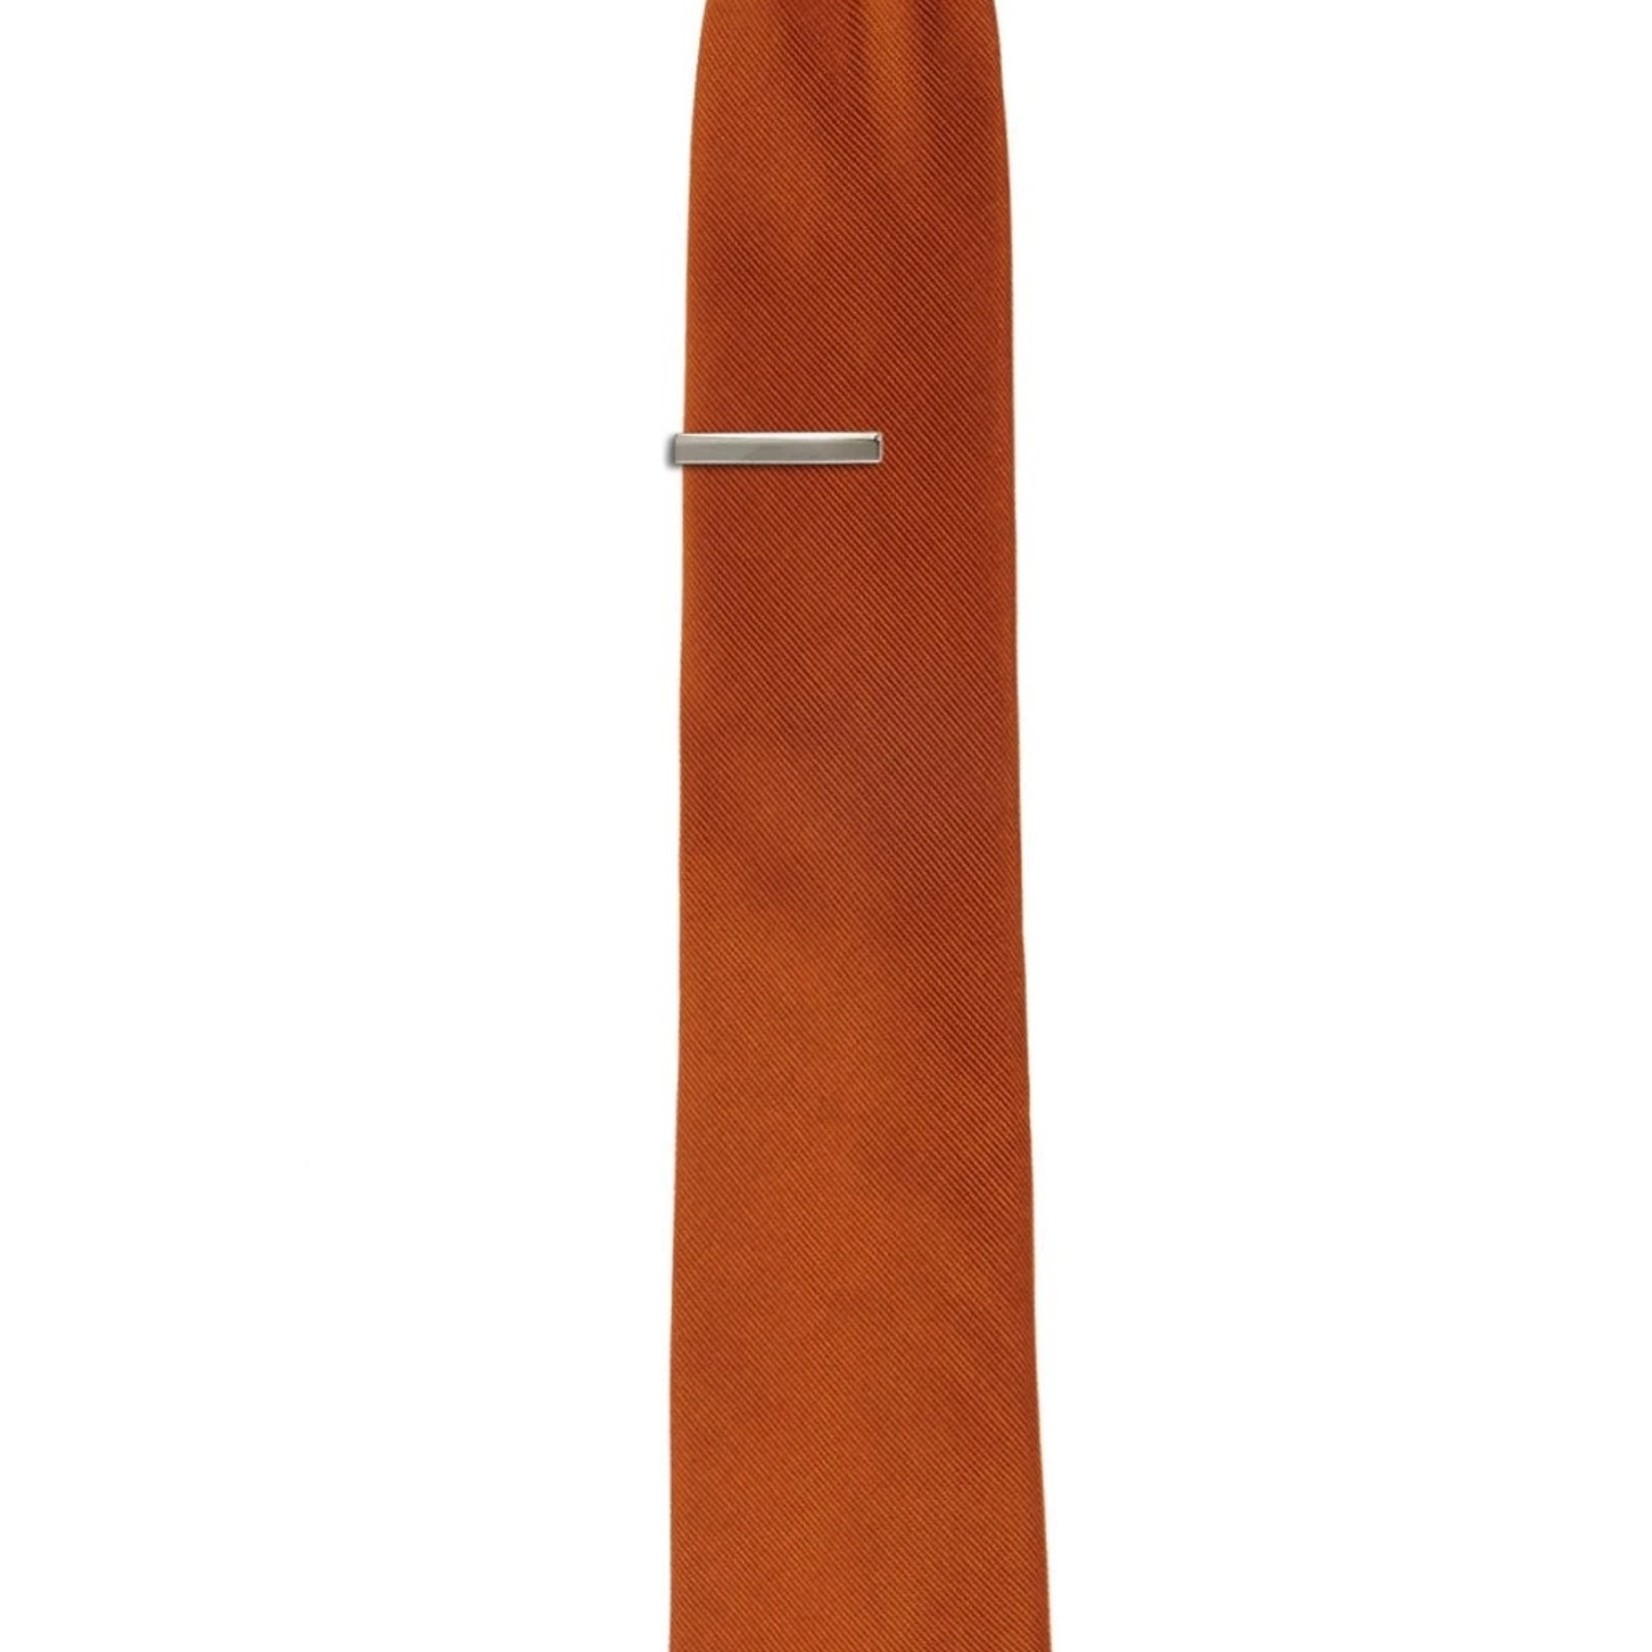 Tie Bar Grosgrain Solid Burnt Orange Tie